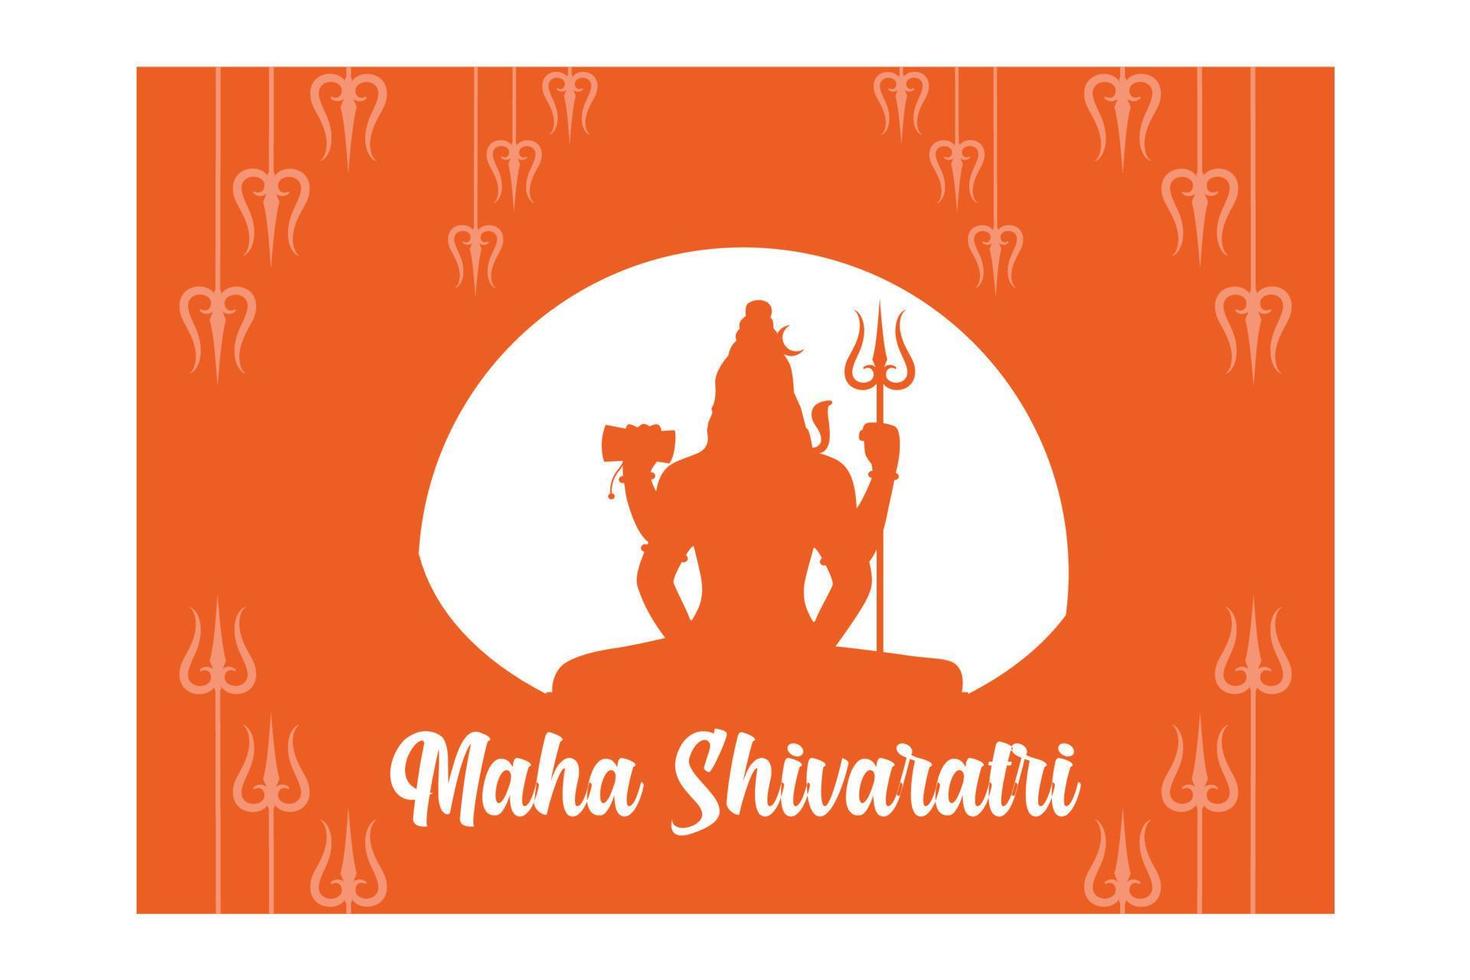 caligrafia, tipografia para maha shivaratri é um festival hindu celebrado anualmente em homenagem ao deus shiva, ilustração moderna de vetor plano